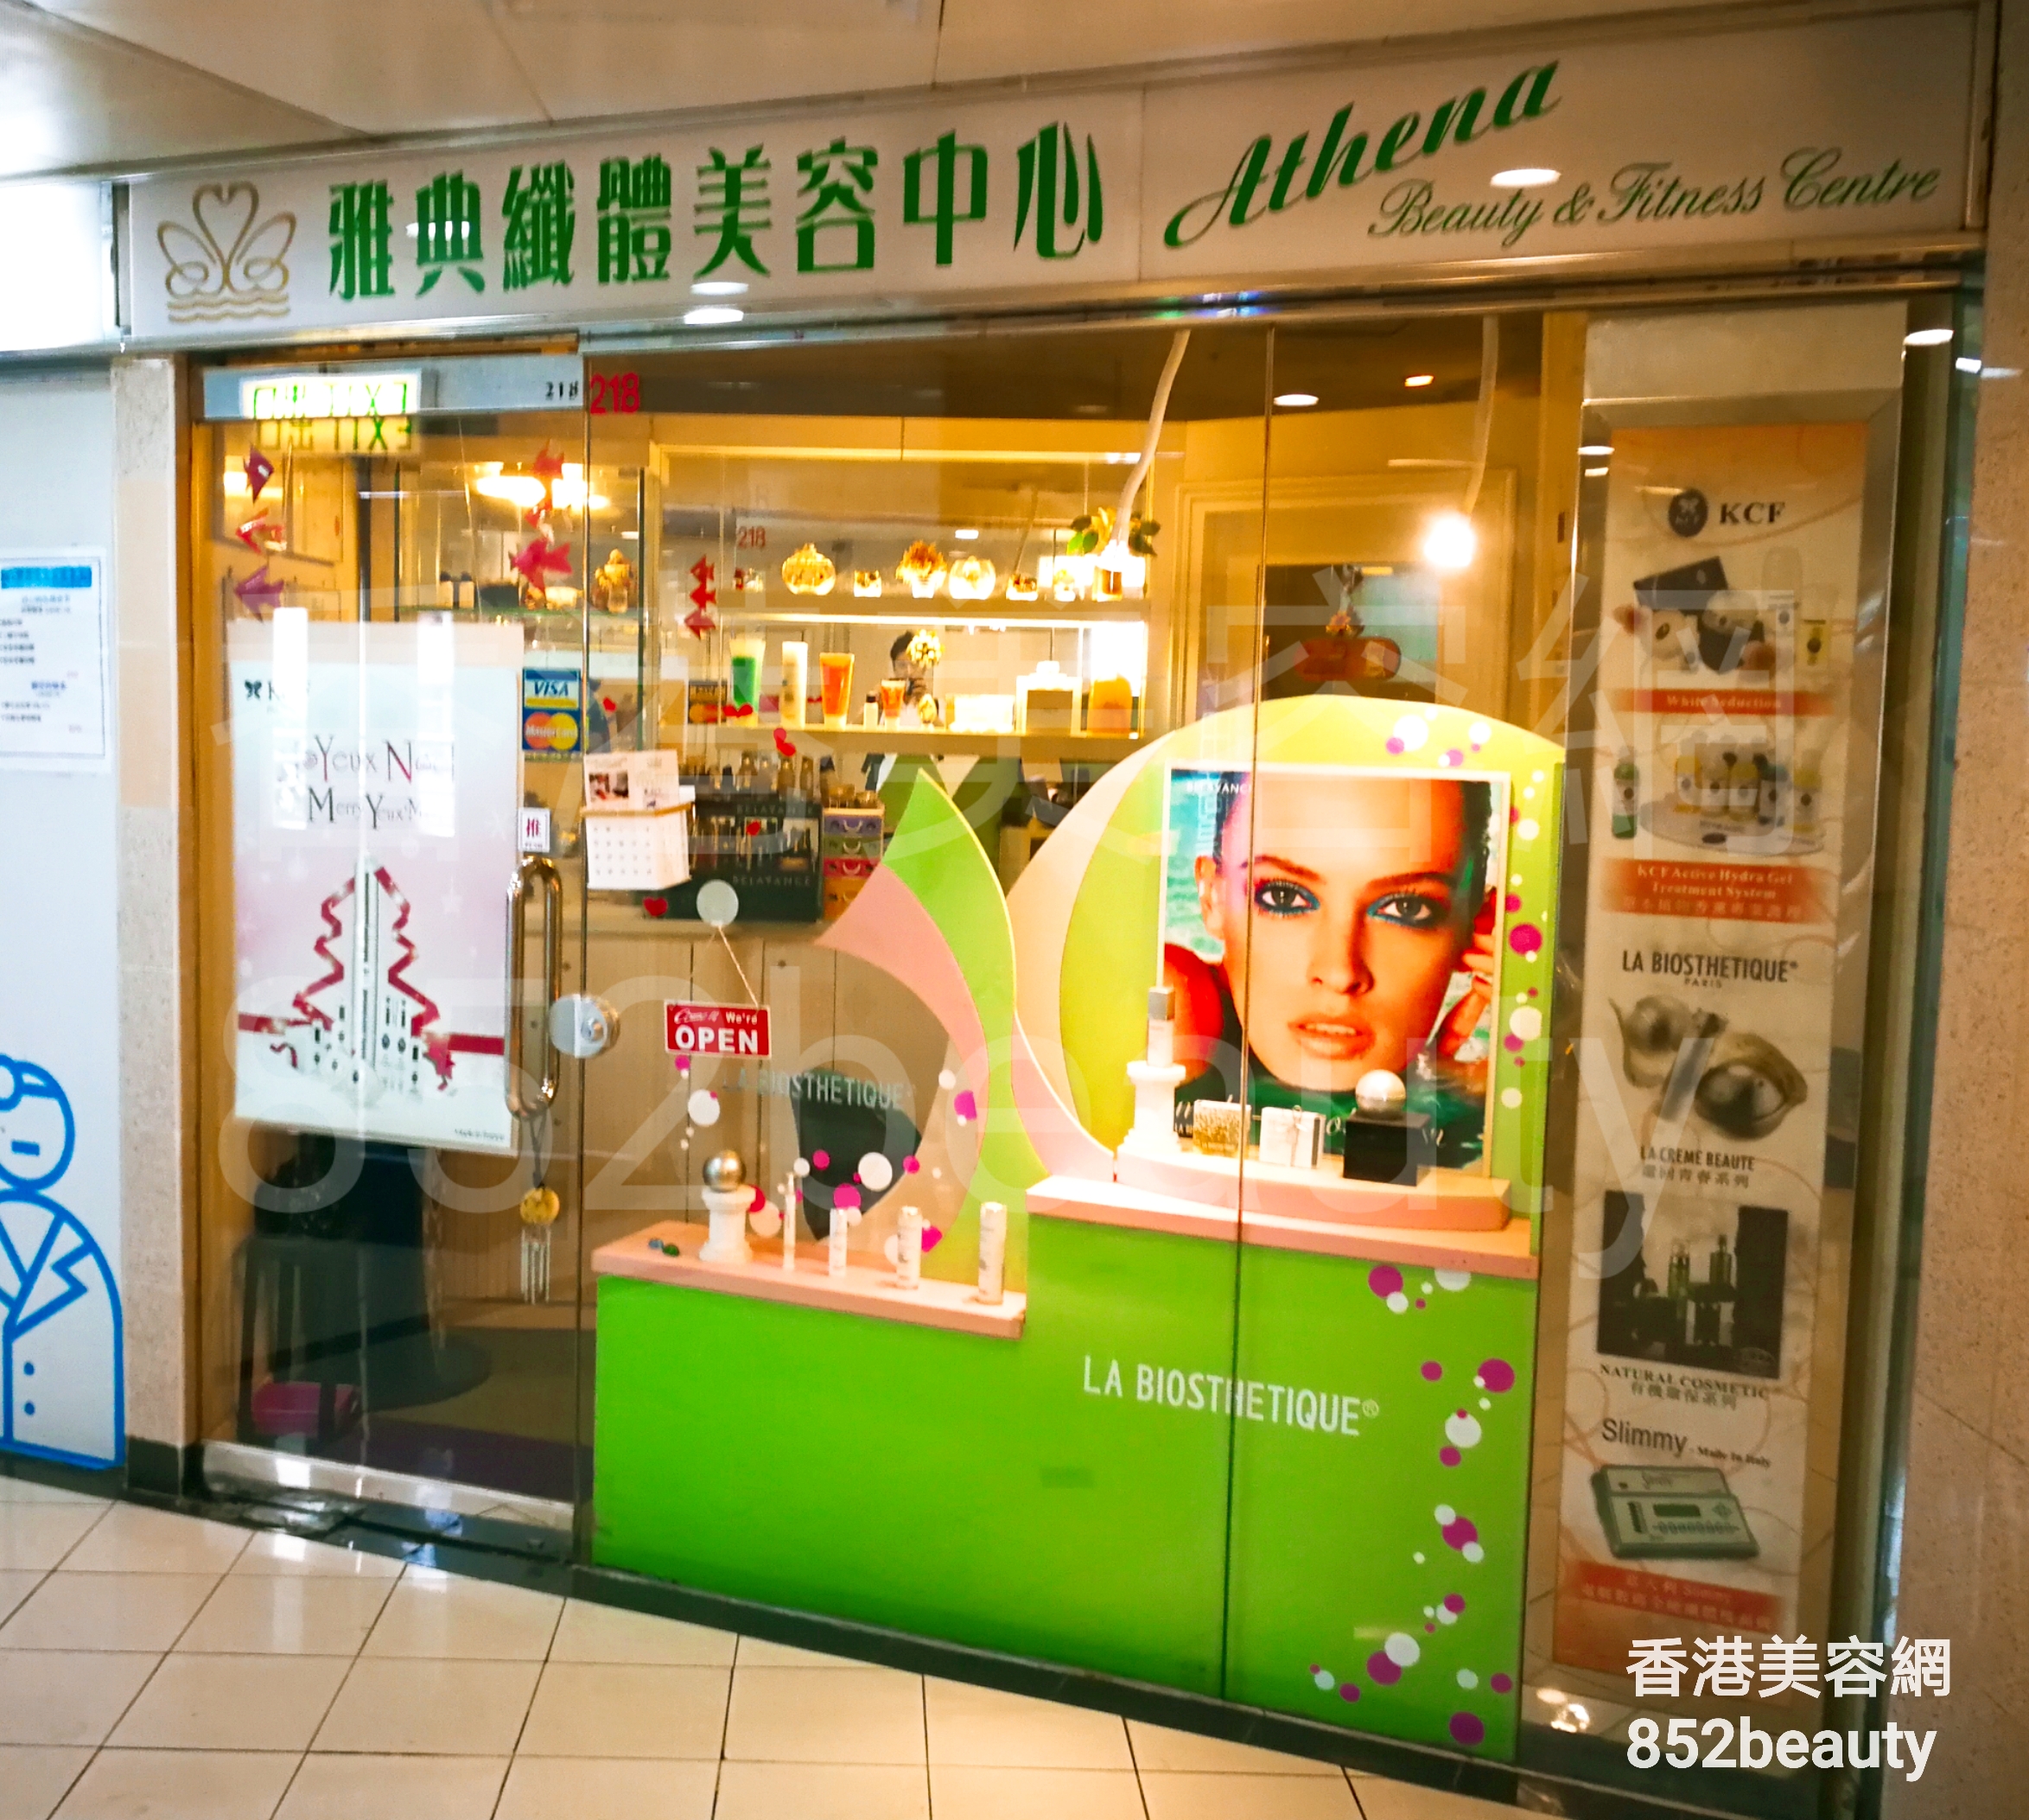 香港美容網 Hong Kong Beauty Salon 美容院 / 美容師: 雅典纖體美容中心